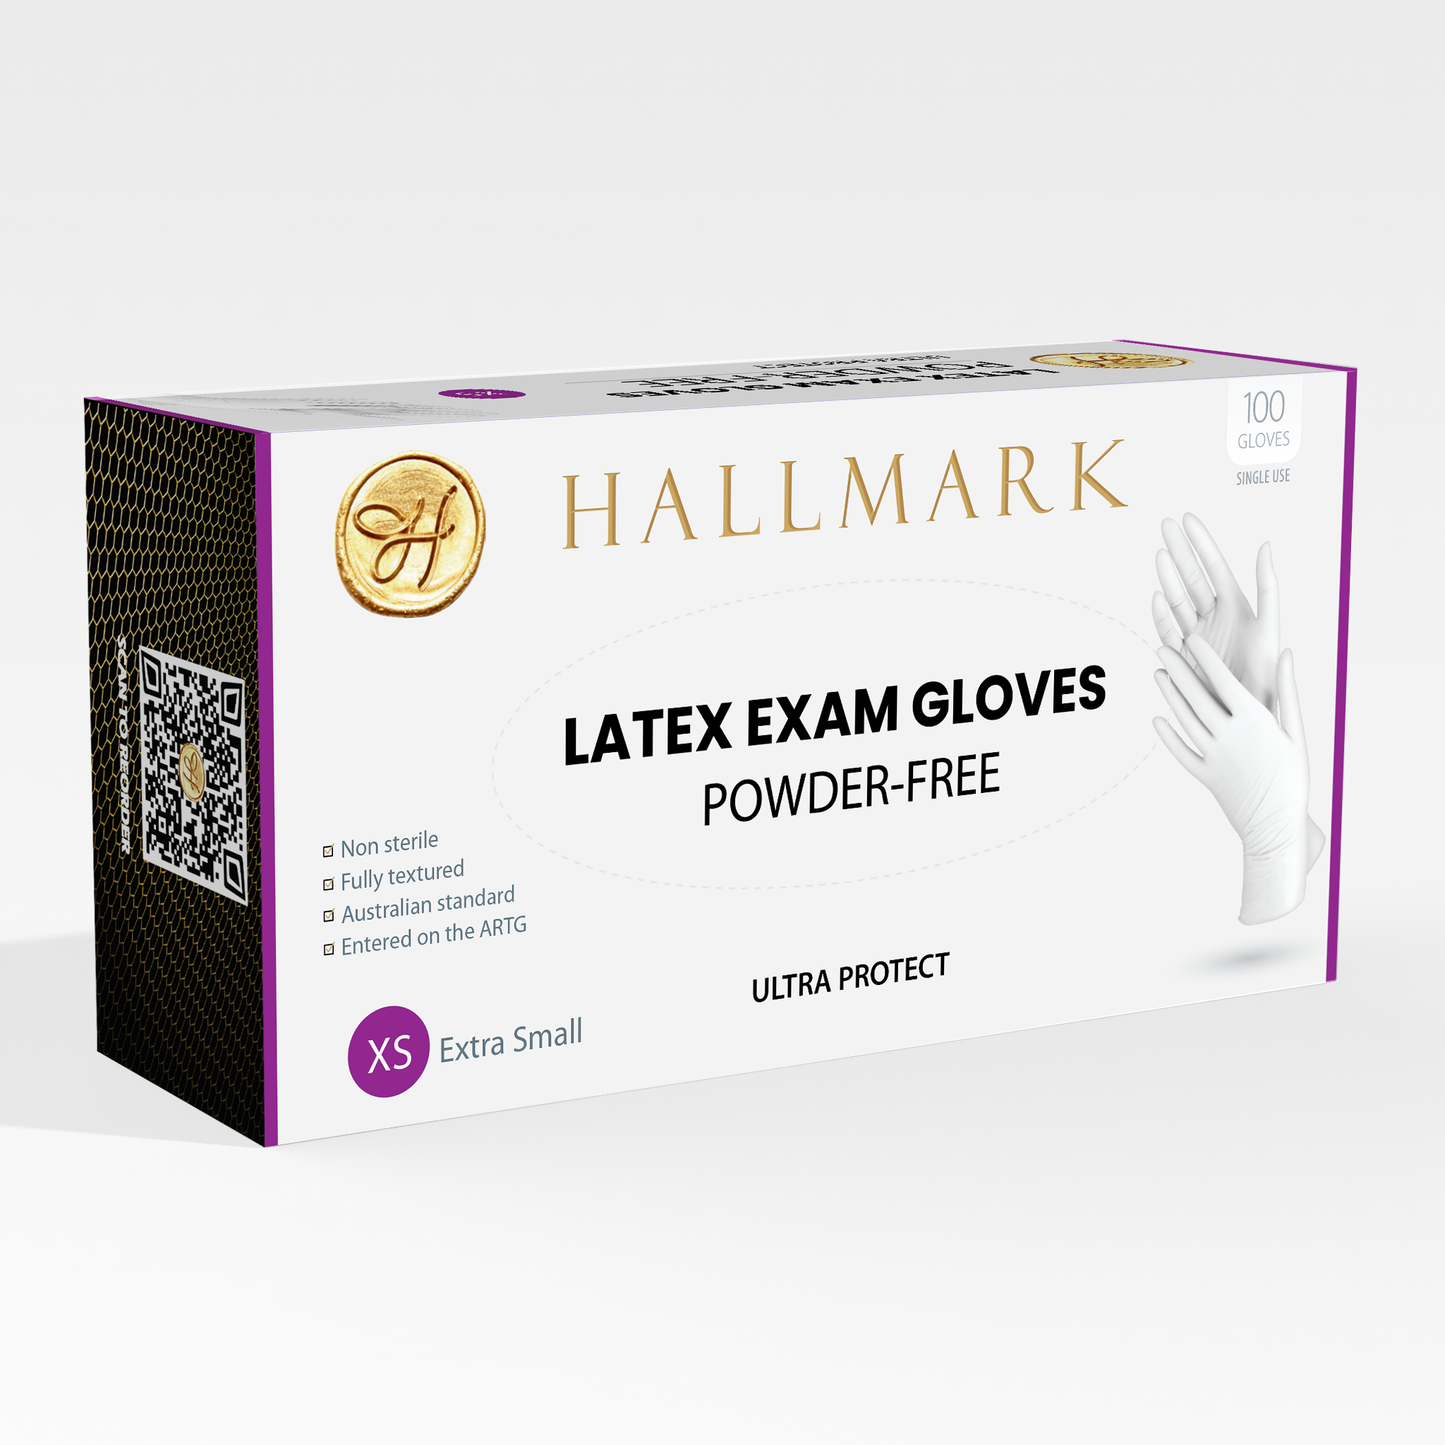 Hallmark Premium Latex Gloves $6.95 per box of 100, 10 boxes per carton